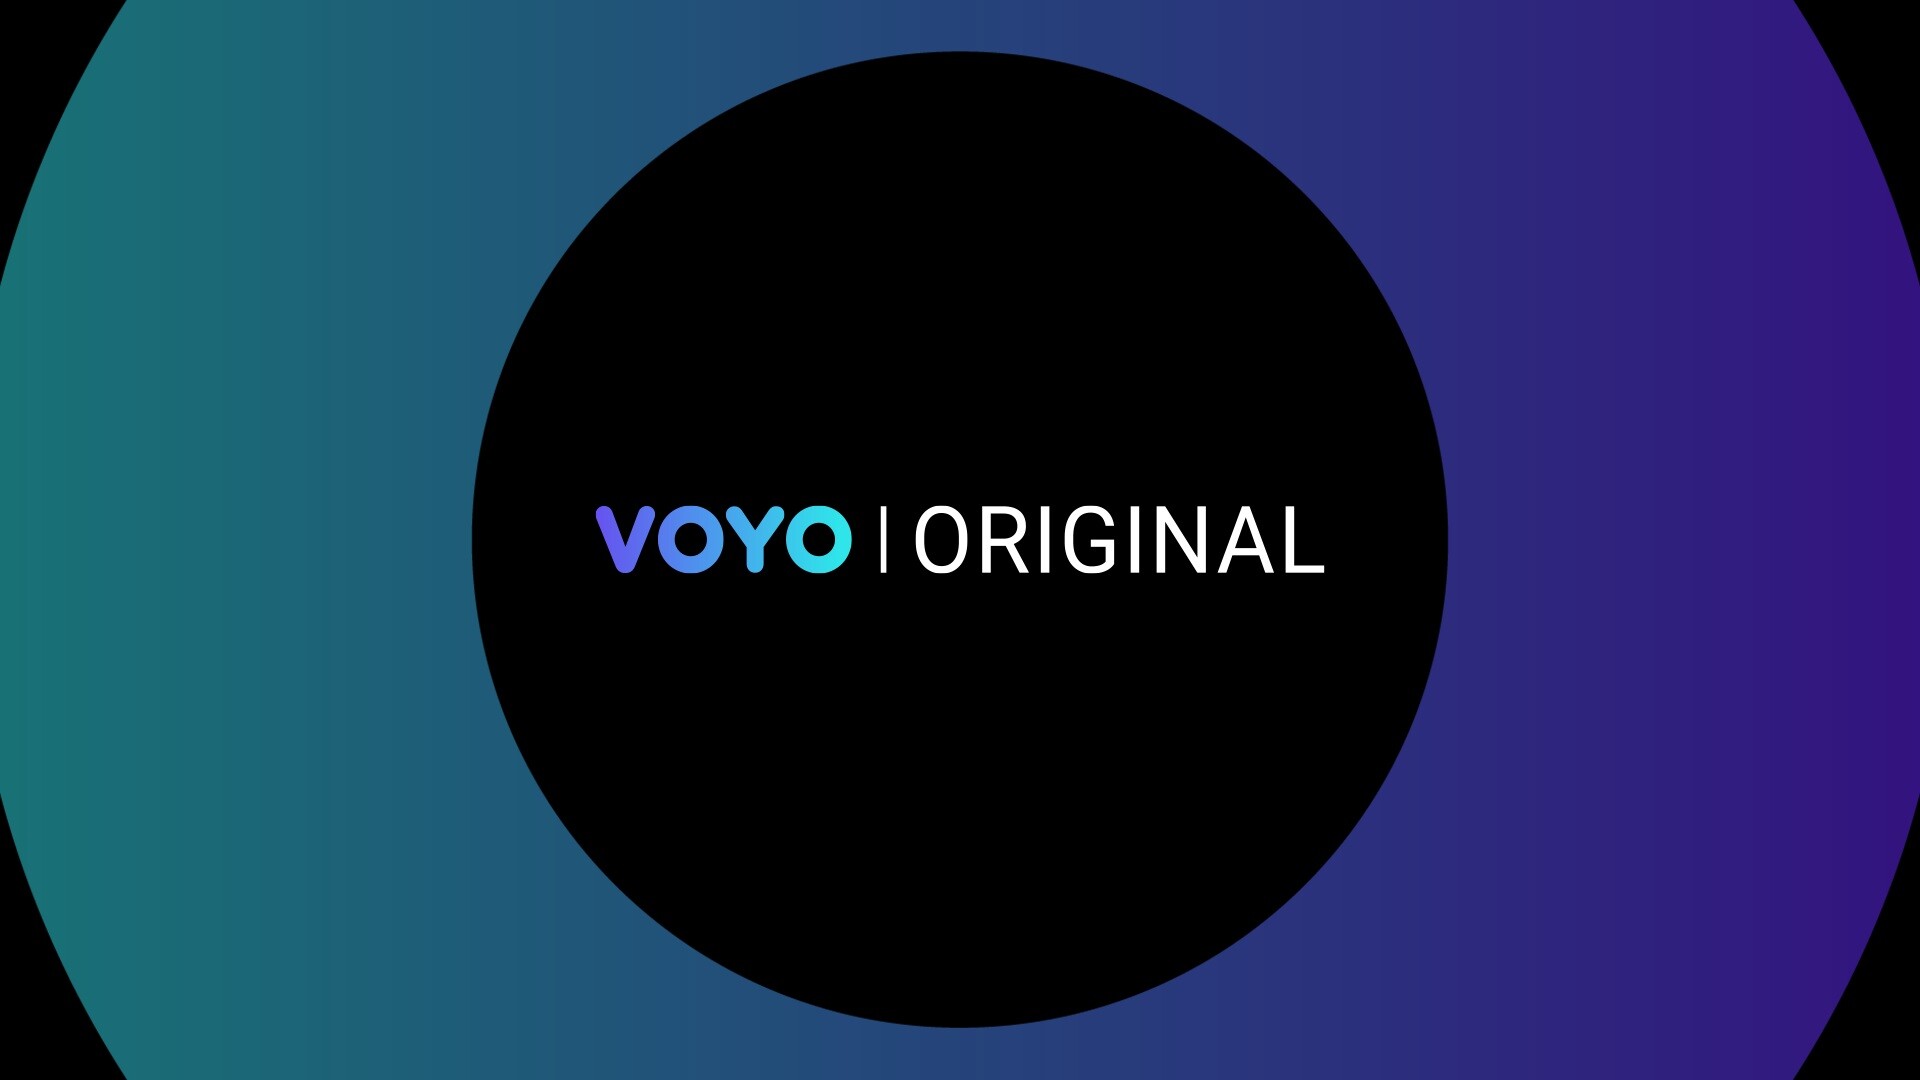 VOYO Original e aici! Descoperă show-uri și conținut video premium exclusiv pe VOYO!